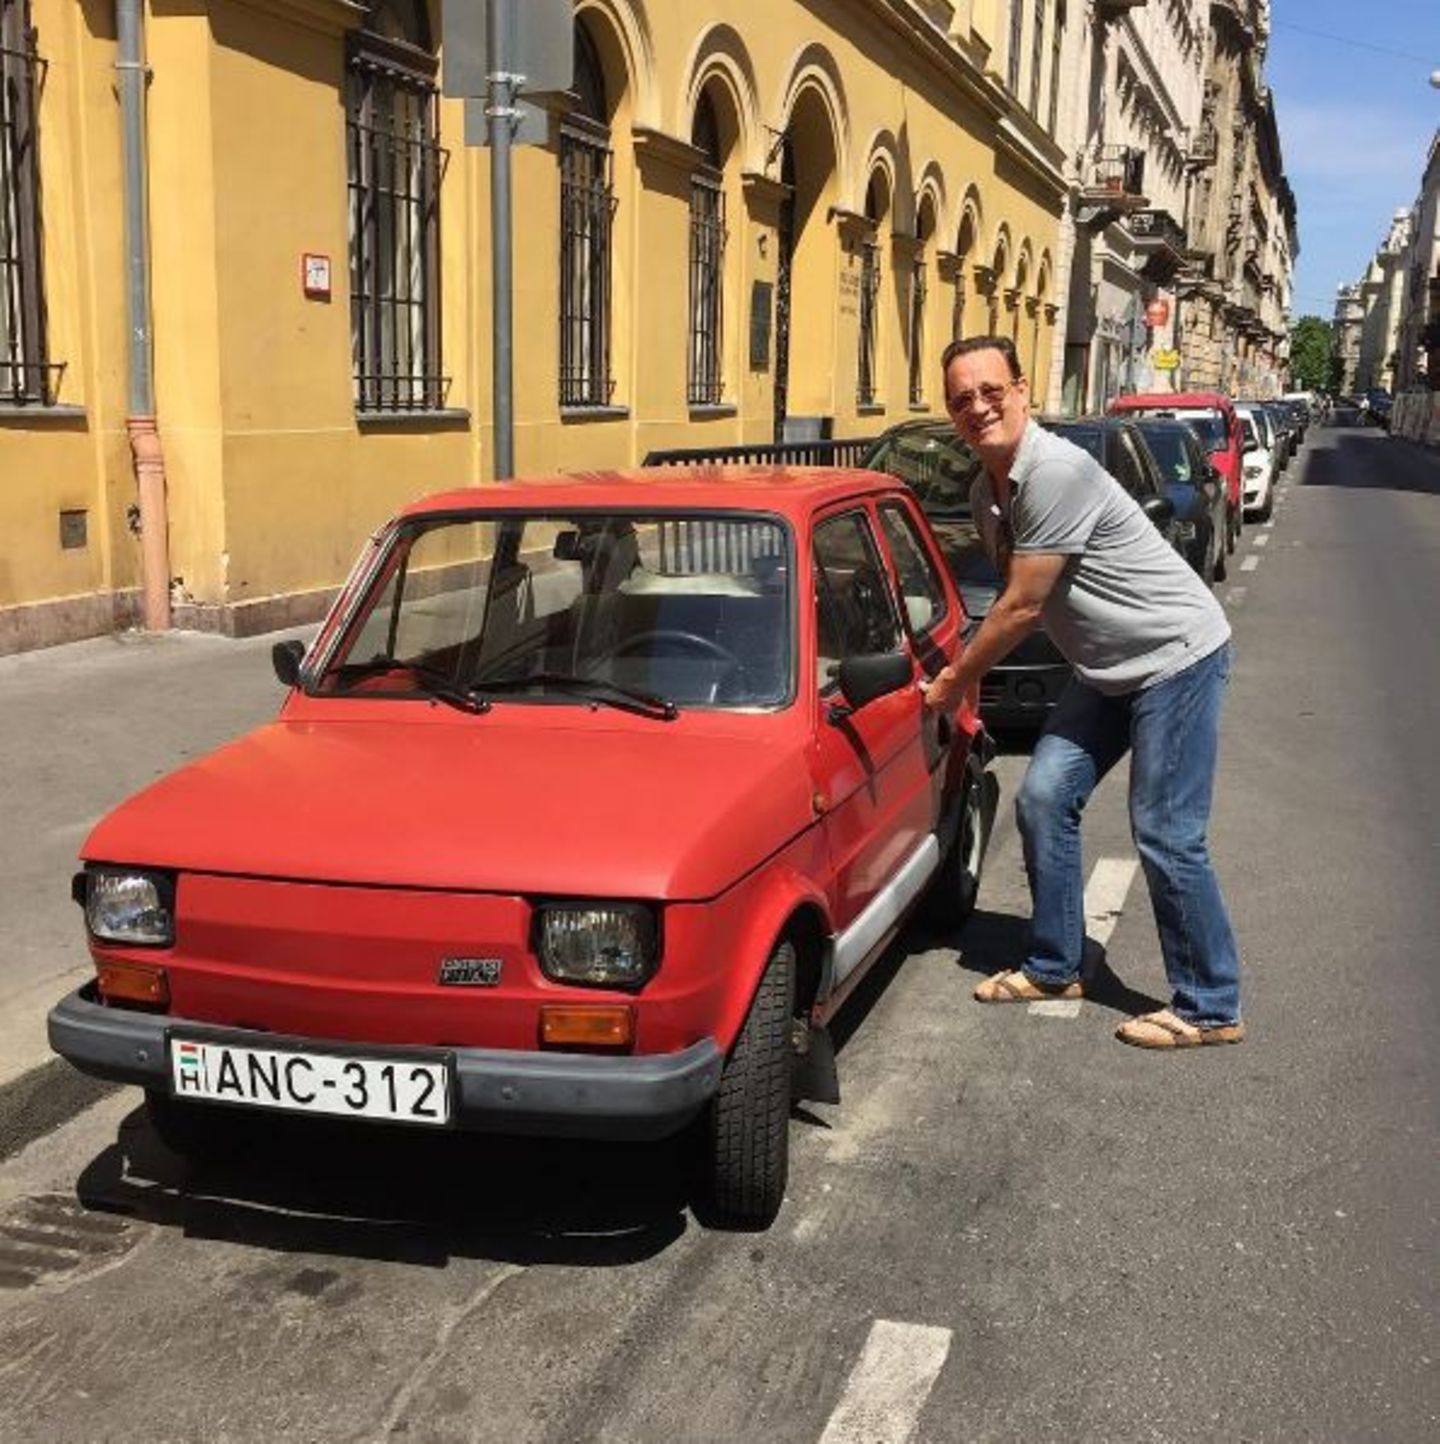 Bei einem sonnigen Spaziergang in Ungarn entdeckt Tom Hanks das Auto seiner Träume.